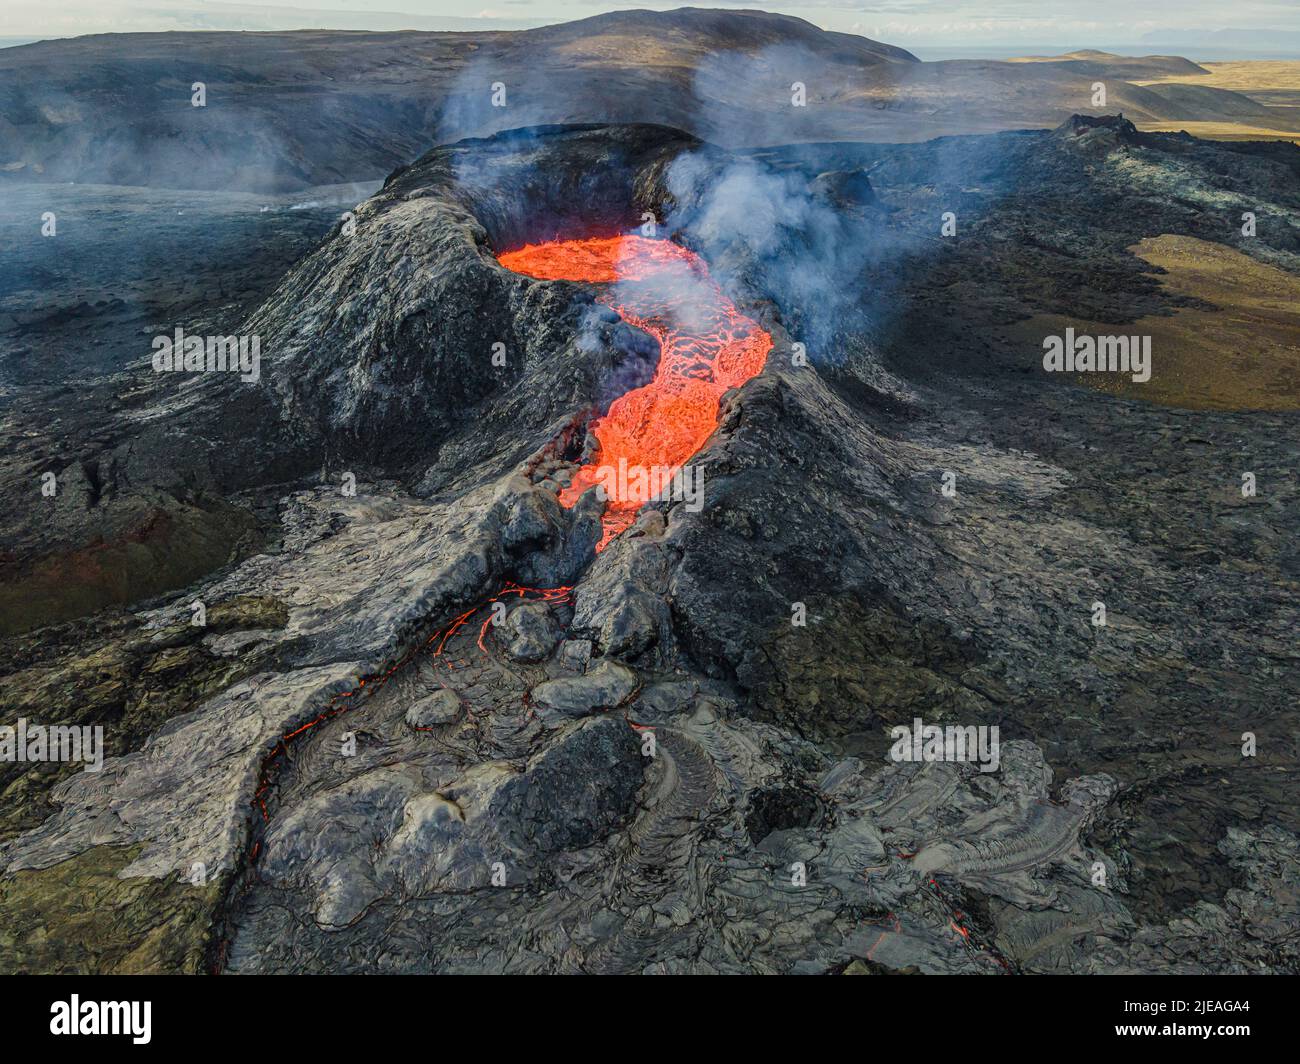 Vulkanlandschaft auf der isländischen Halbinsel Reykjanes. Blick auf den Krater von oben. Flüssige Lava fließt heraus. Dampf und Rauch in der Nähe des Krater. Stockfoto